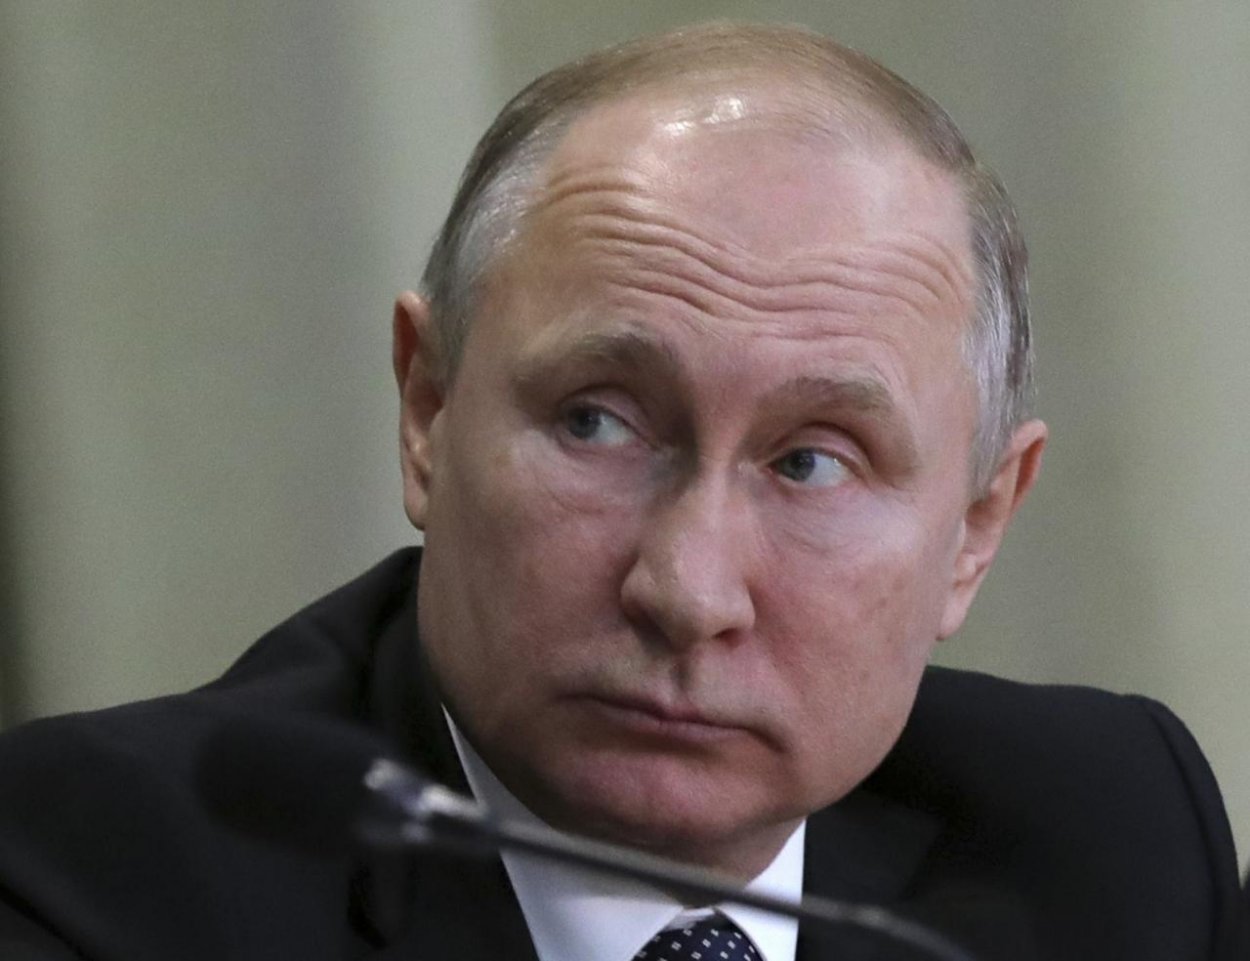 Putin podpísal návrh zákona o „suverénnom internete“​